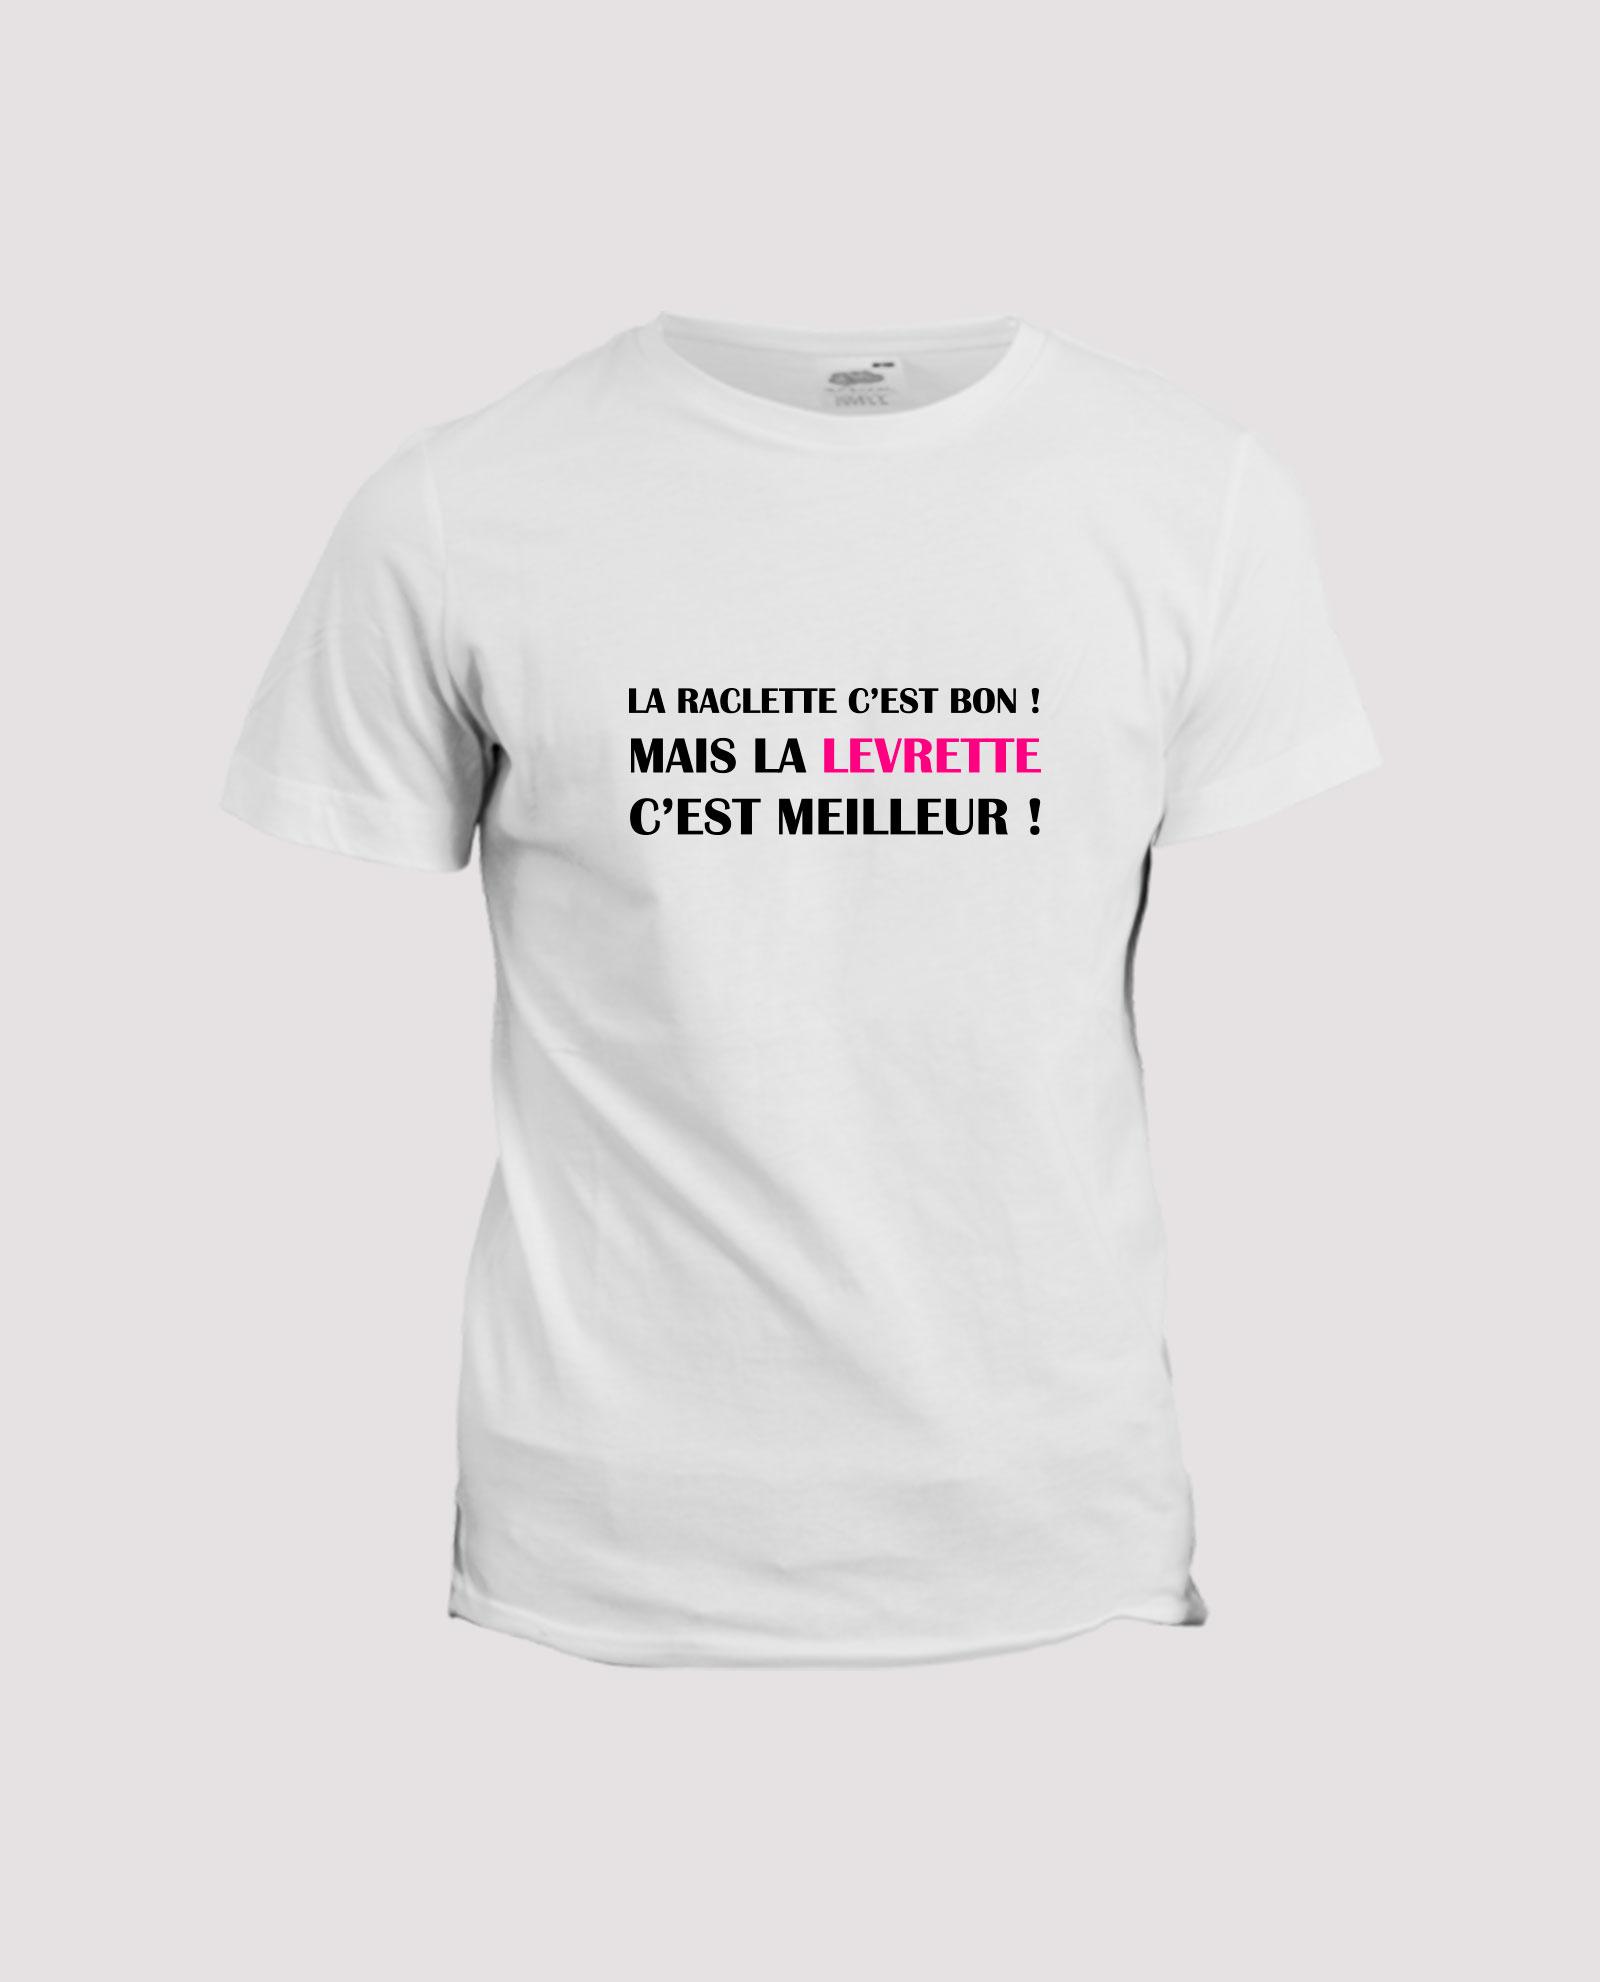 la-ligne-shop-t-shirt-humour-la-raclette-c-est-bon-mais-la-levrette-c-est-meilleur